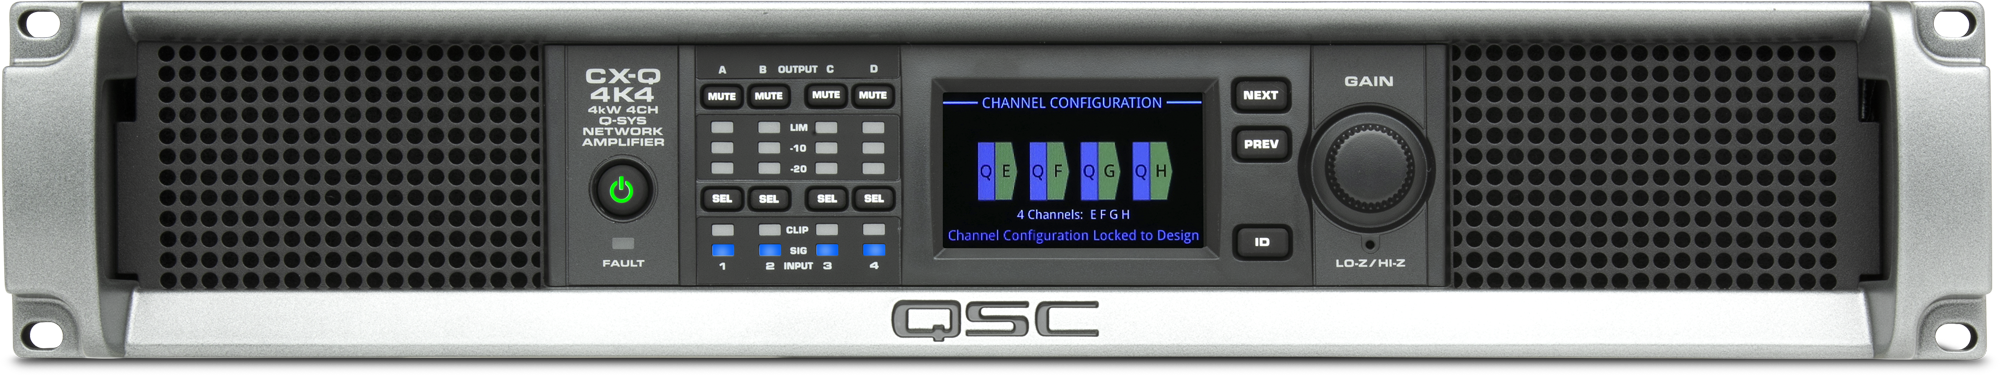 CX-Qn 4K4 / 4-канальный усилитель 4 х 1000Вт Q-SYS, Lo-Z, 70В, 100В, FlexAmp™ / QSC